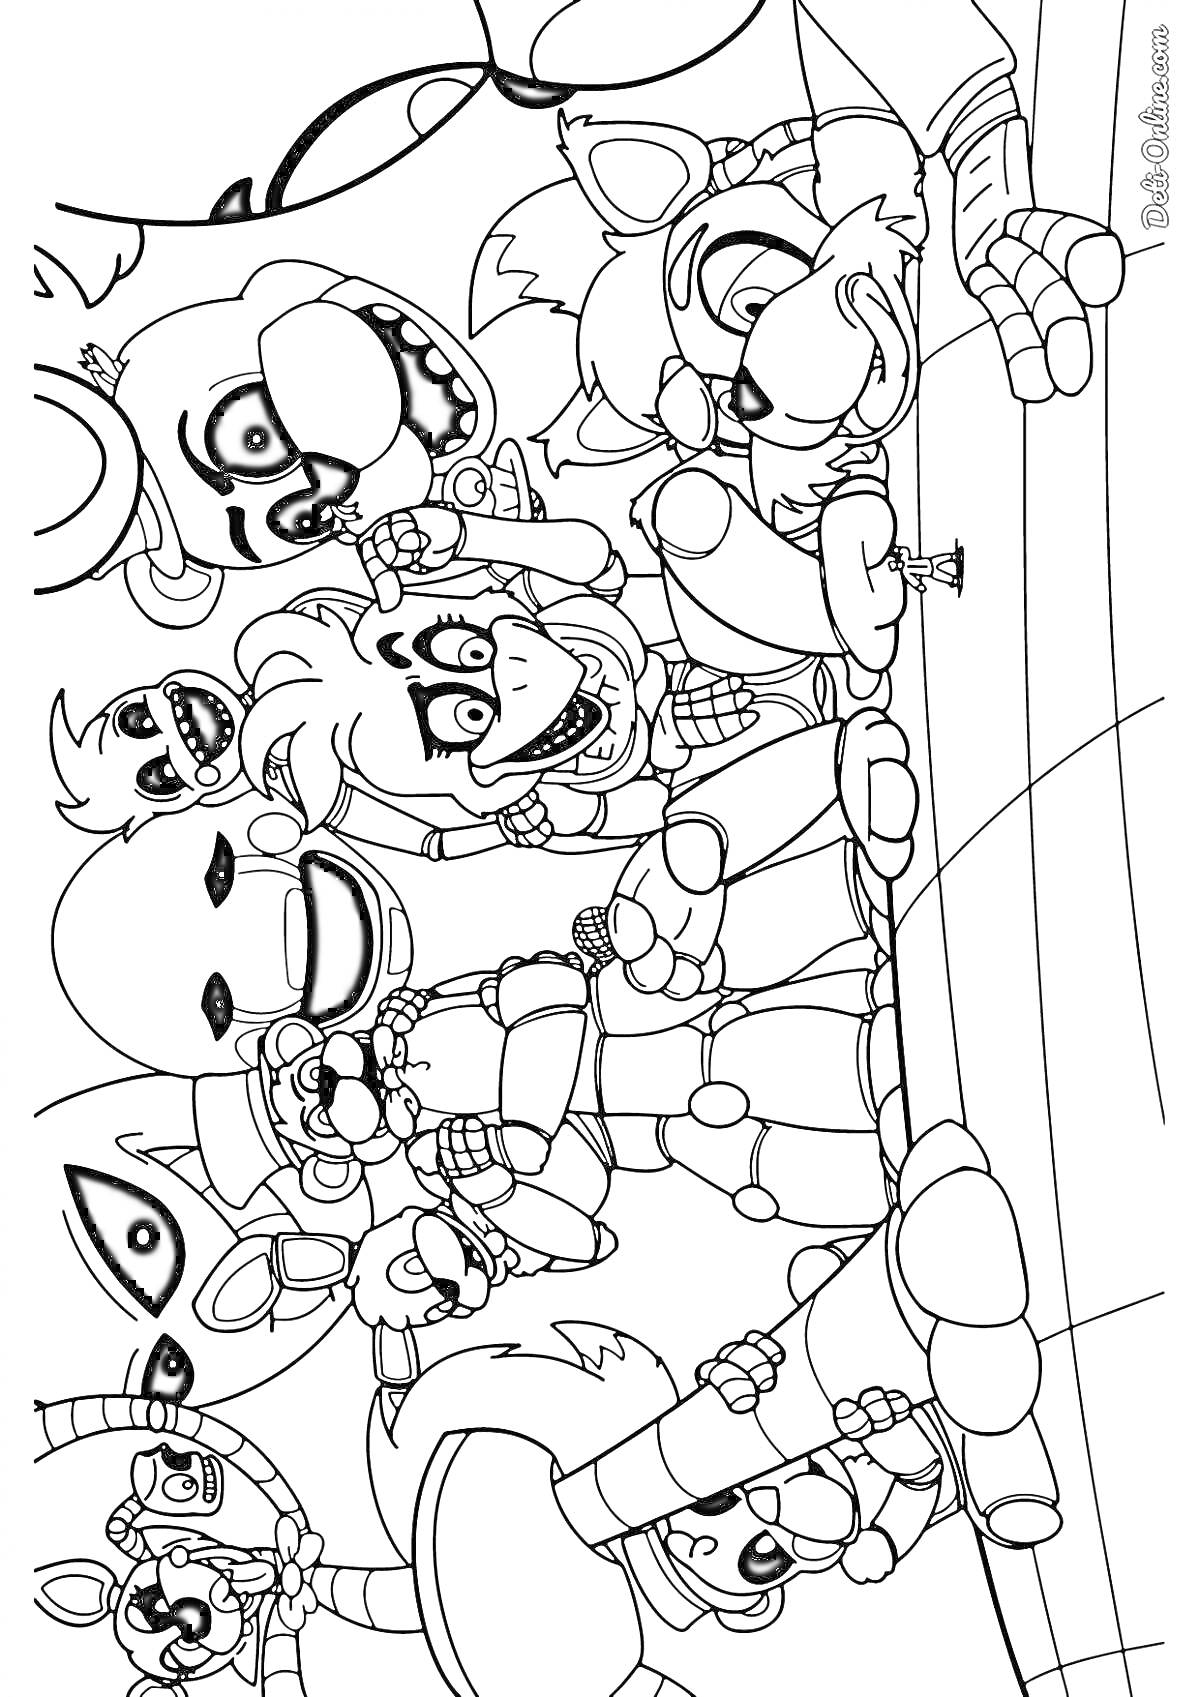 Раскраска Персонажи FNAF 9, множество аниматроников в активной позе